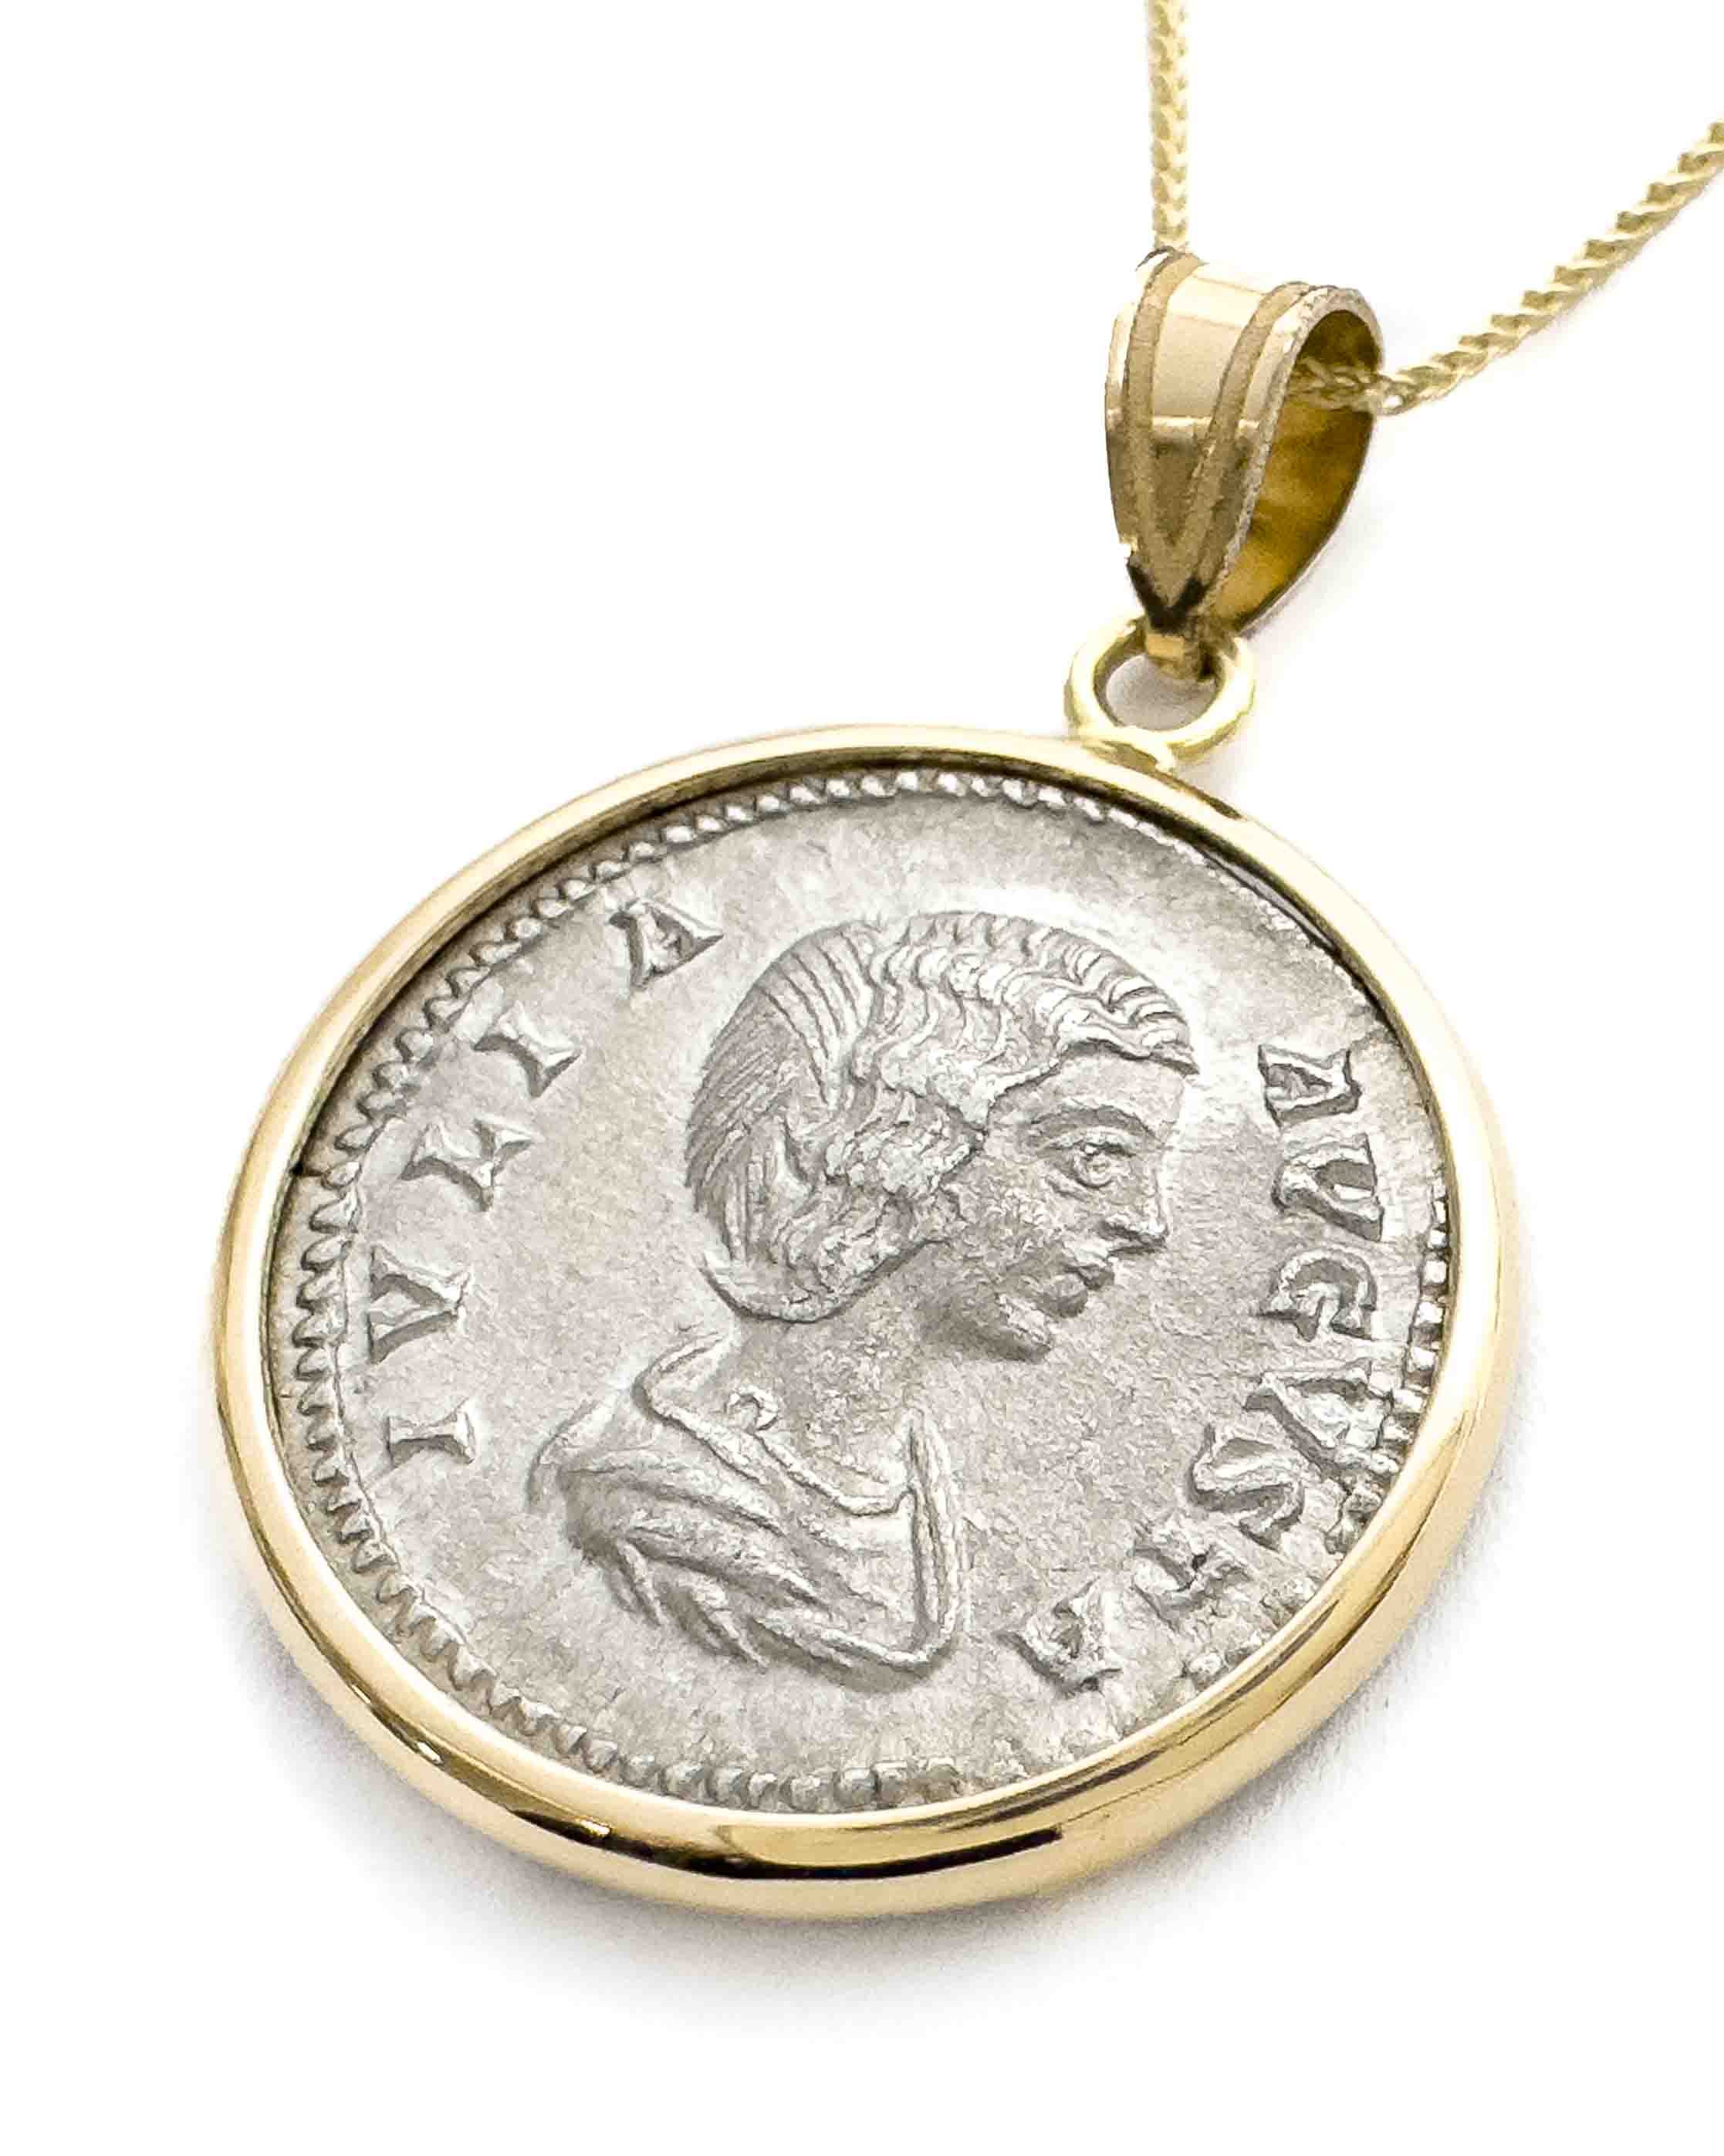 Vintage JULIA DOMNA 18k Rose & White Gold Diamond Medallion Pendant $5500  Retail